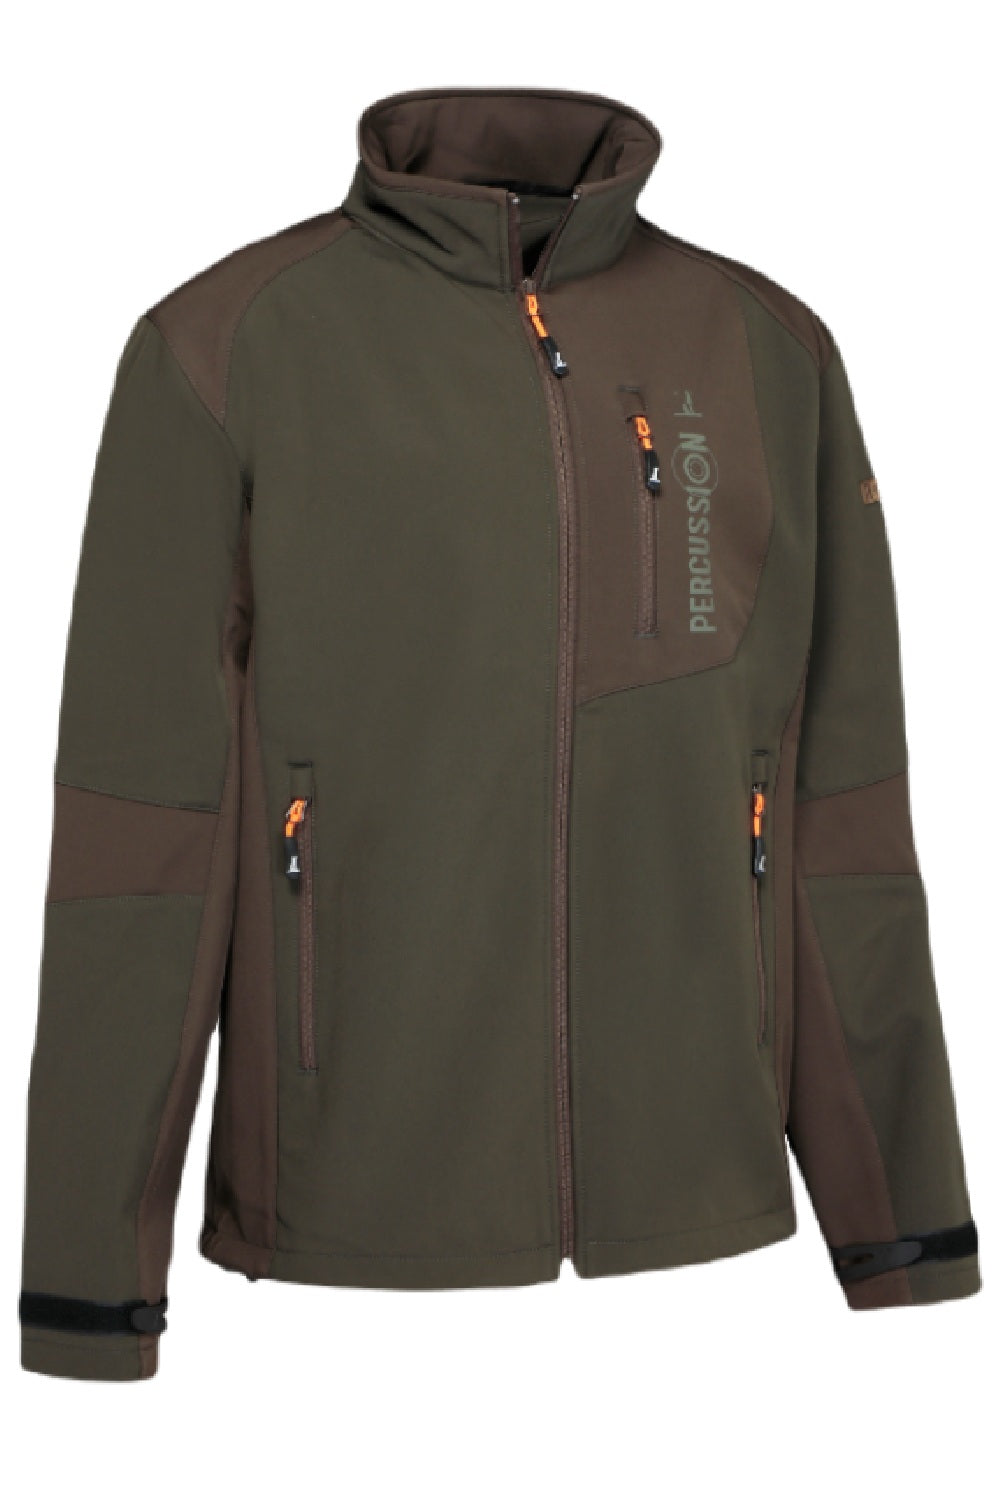 Carrbridge Waterproof Fleece Jacket